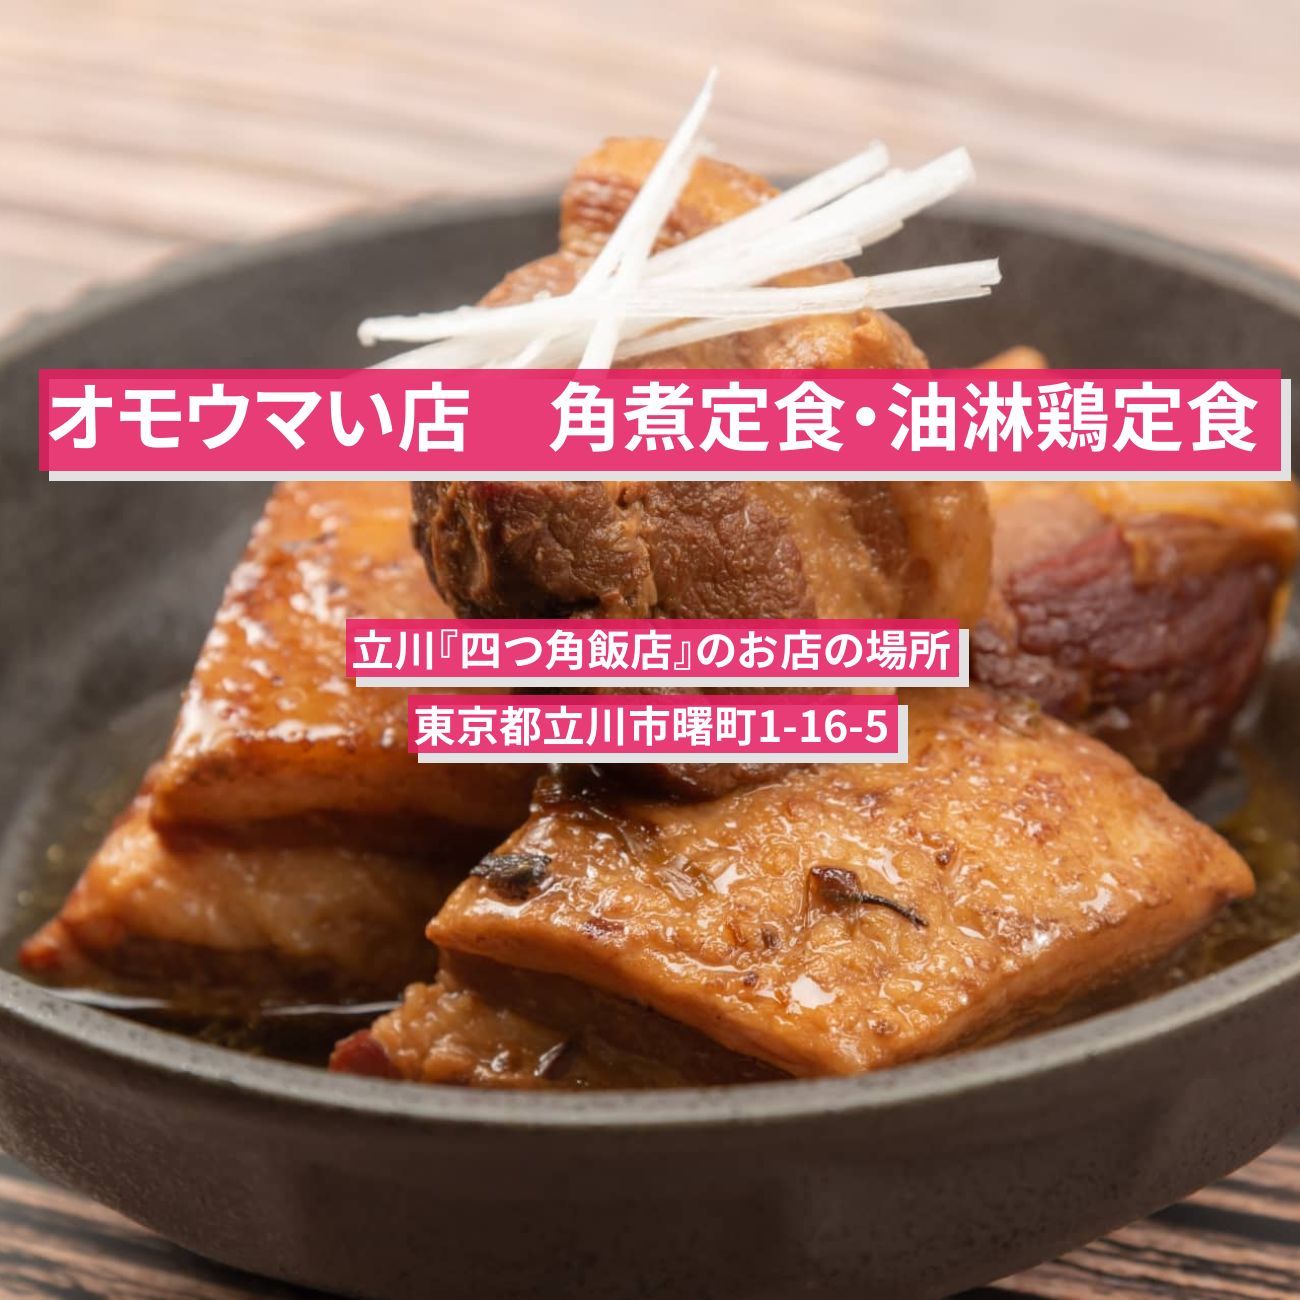 【オモウマい店】角煮定食・油淋鶏定食『四つ角飯店』立川のお店の場所